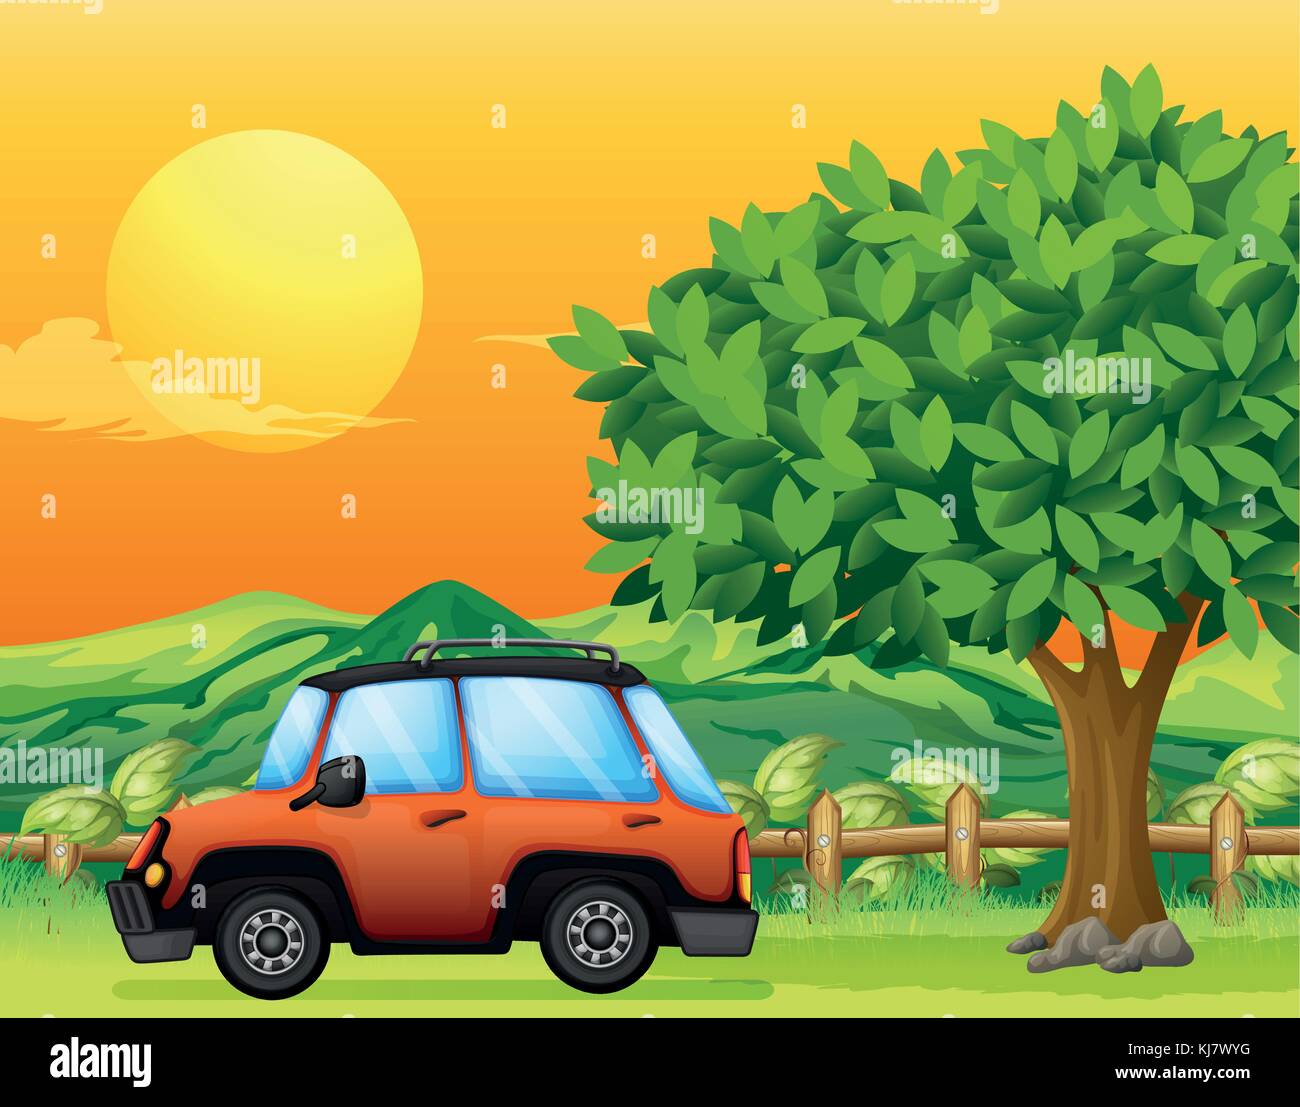 Illustrazione di un veicolo arancione vicino al grande albero Illustrazione Vettoriale